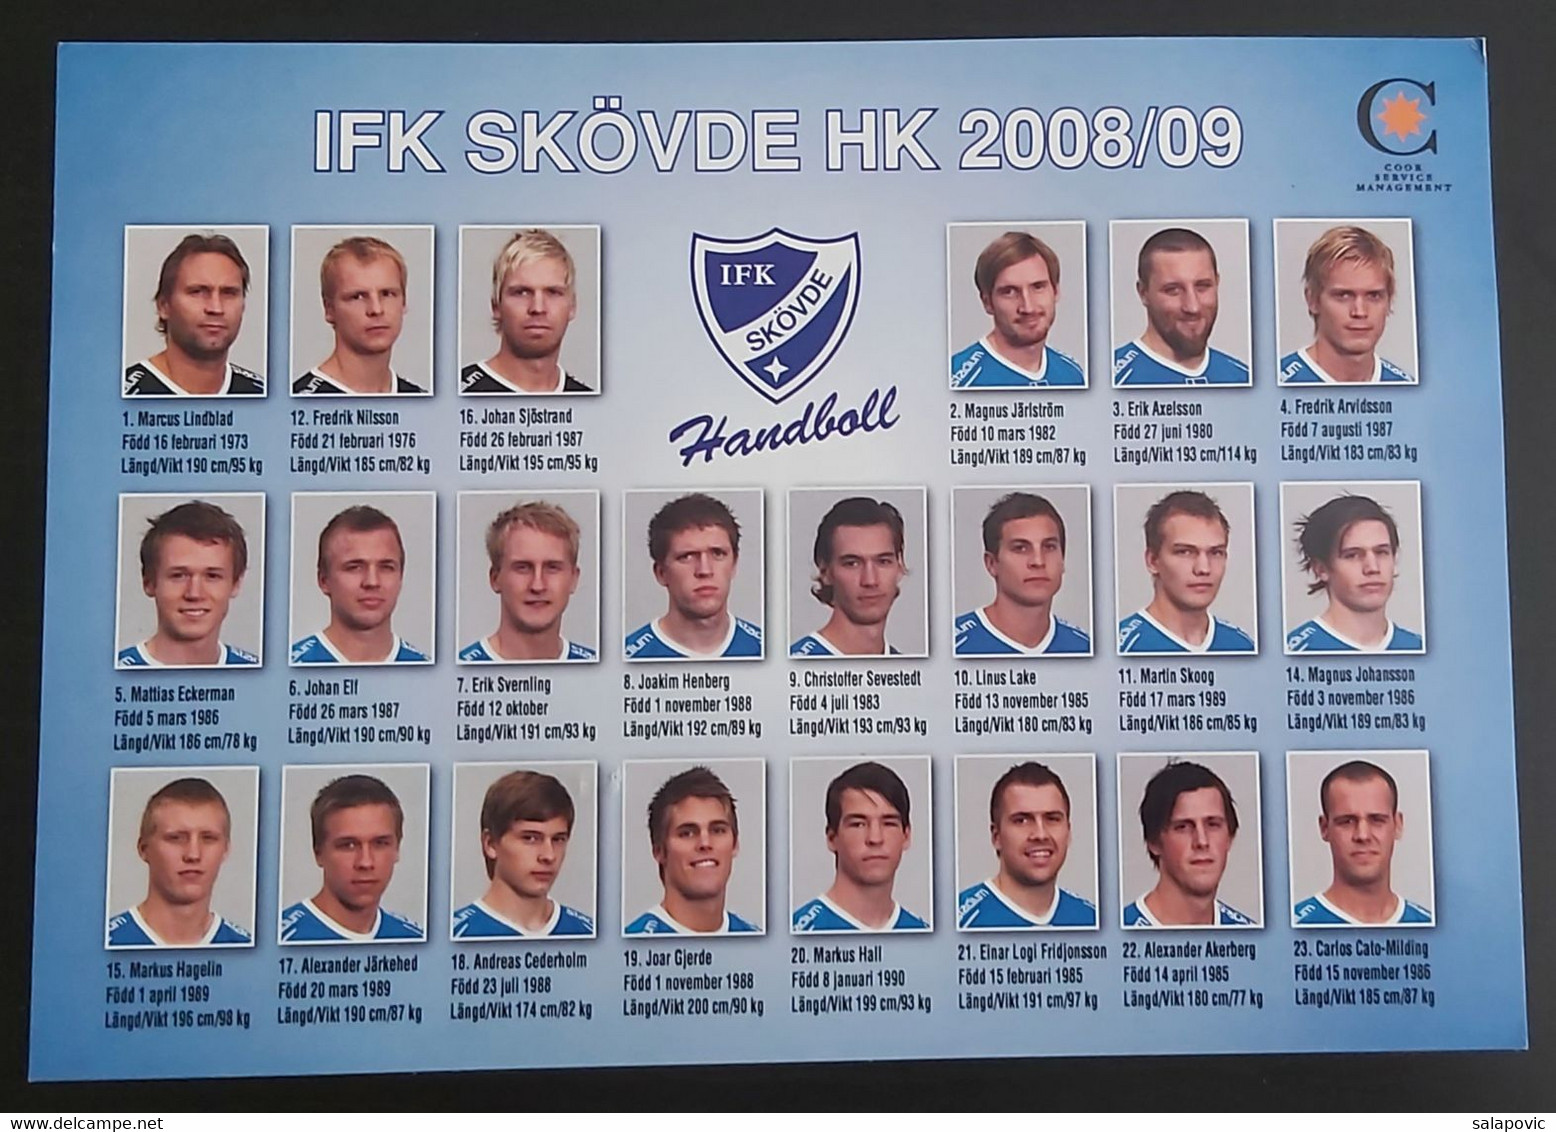 IFK Skövde Sweden Handball Club   SL - 1 - Pallamano